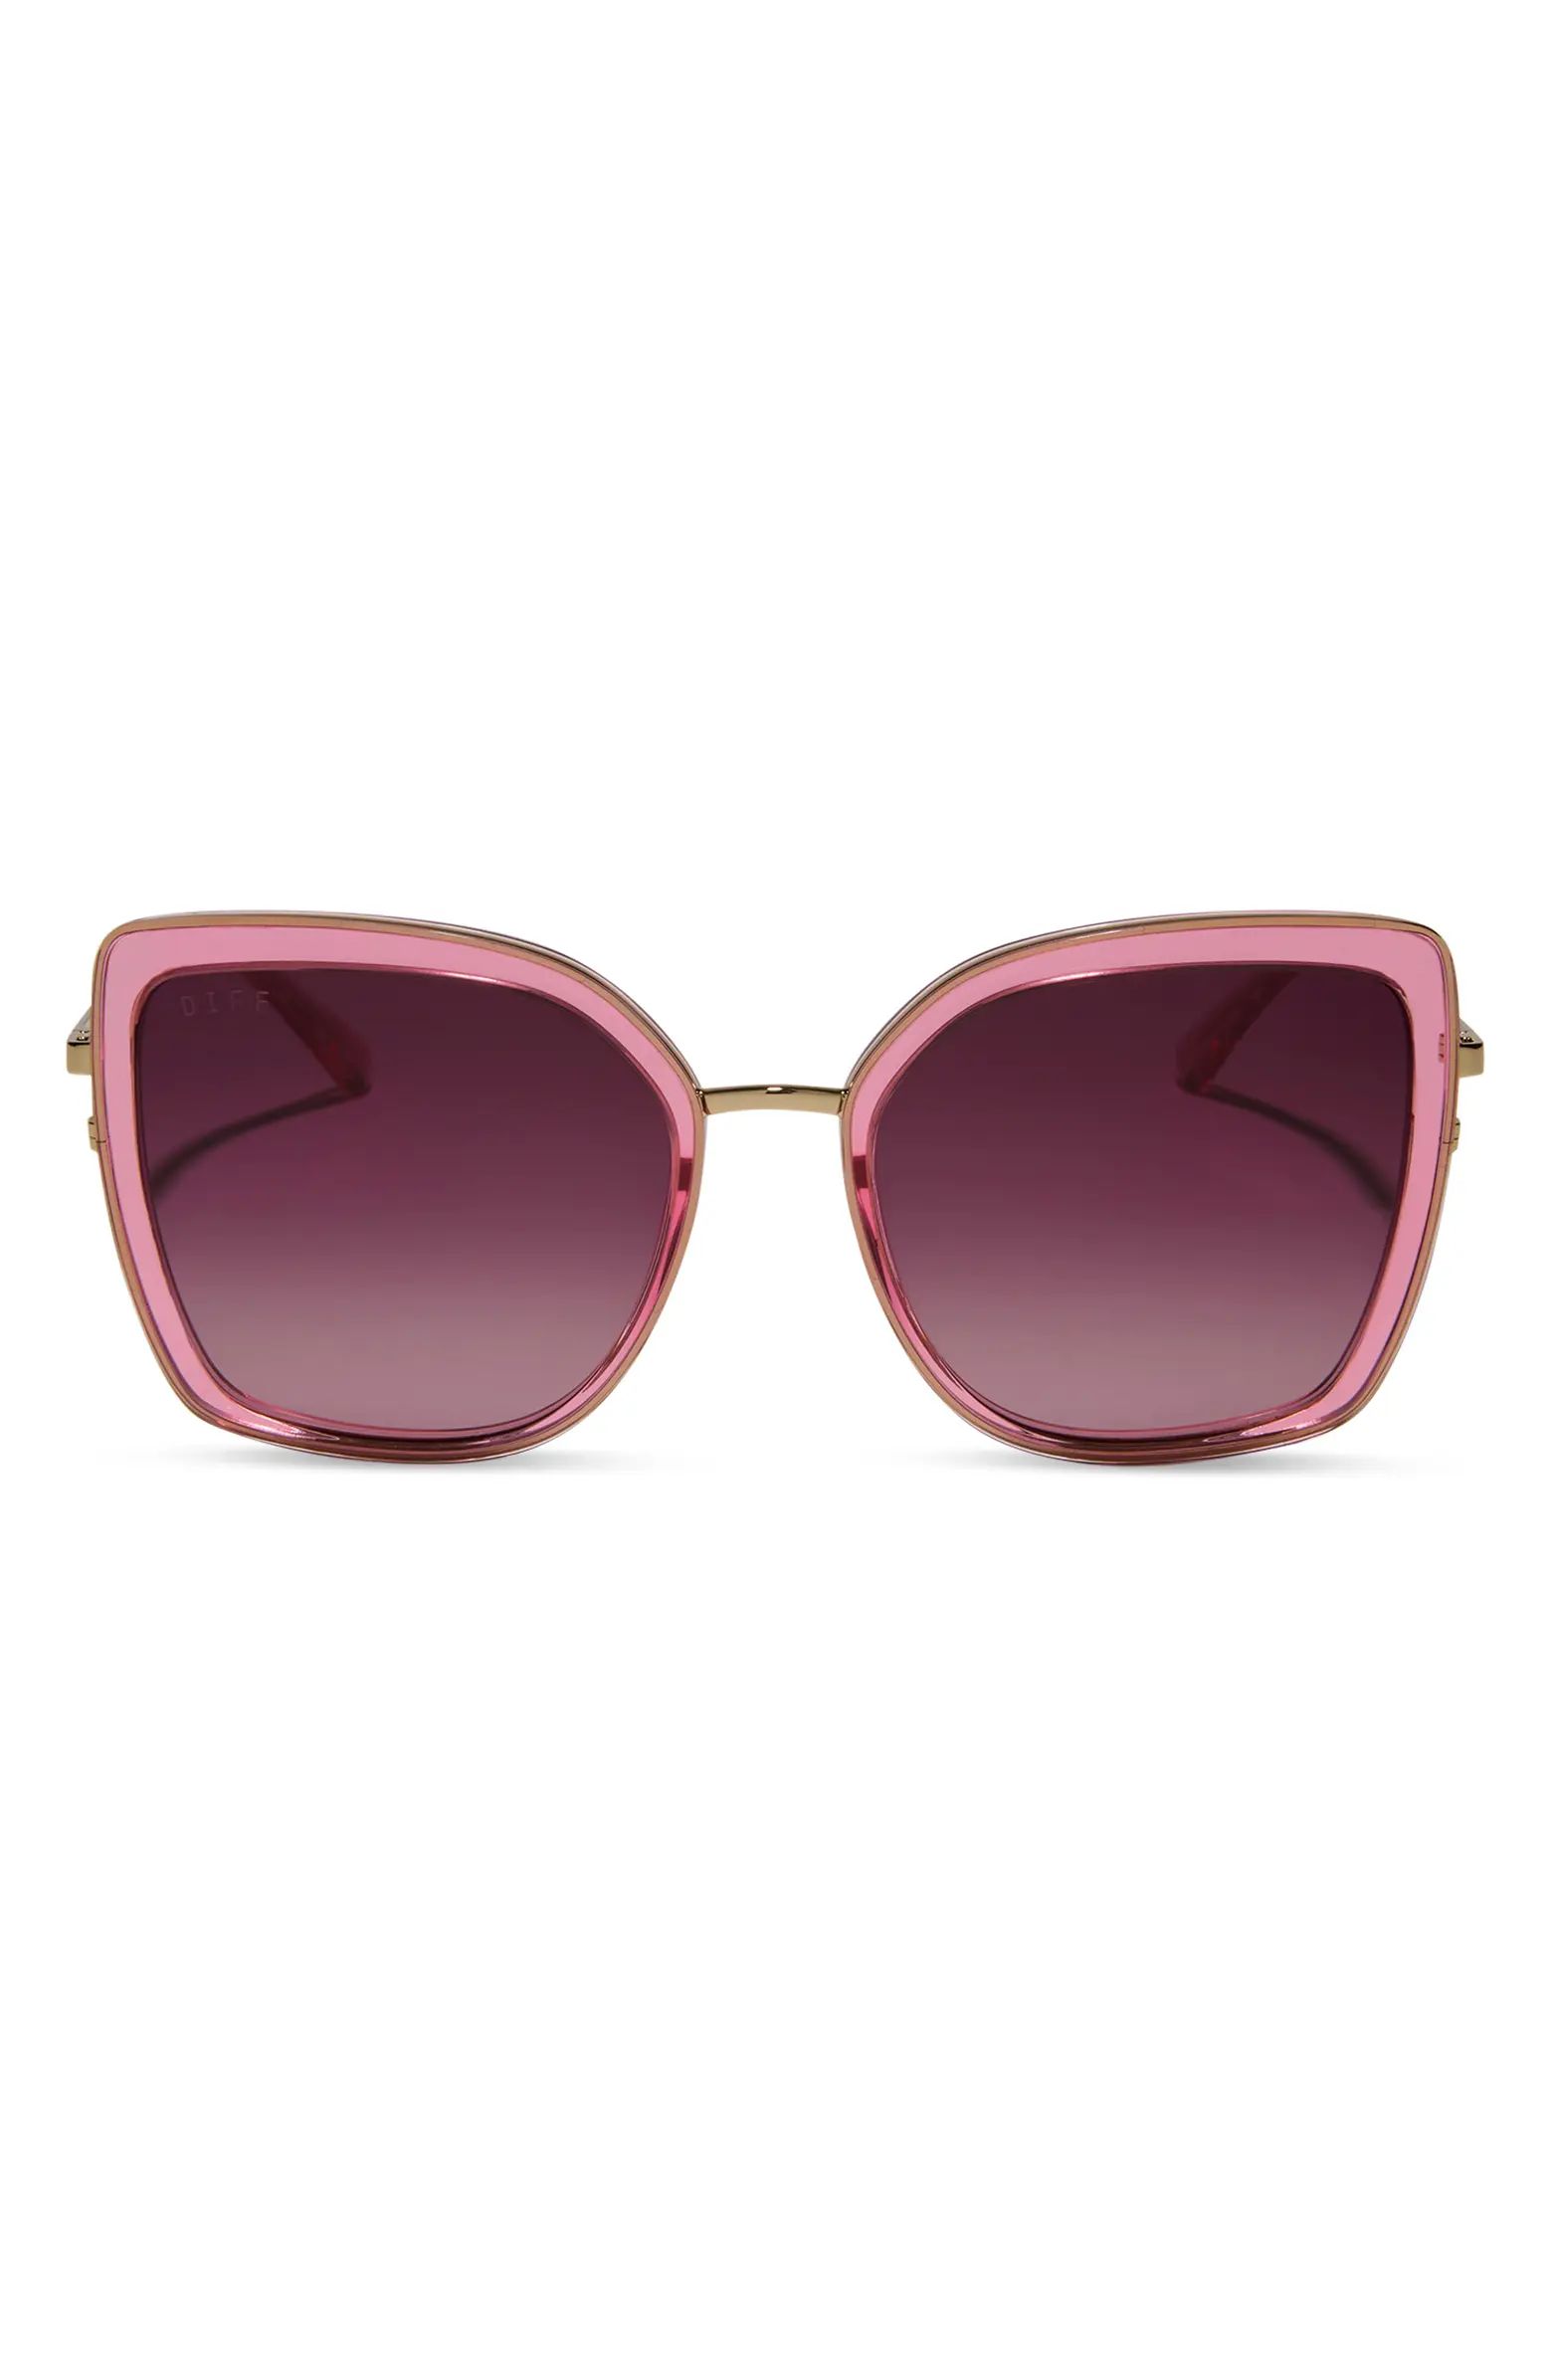 DIFF Clarisse 57mm Gradient Square Sunglasses | Nordstrom | Nordstrom